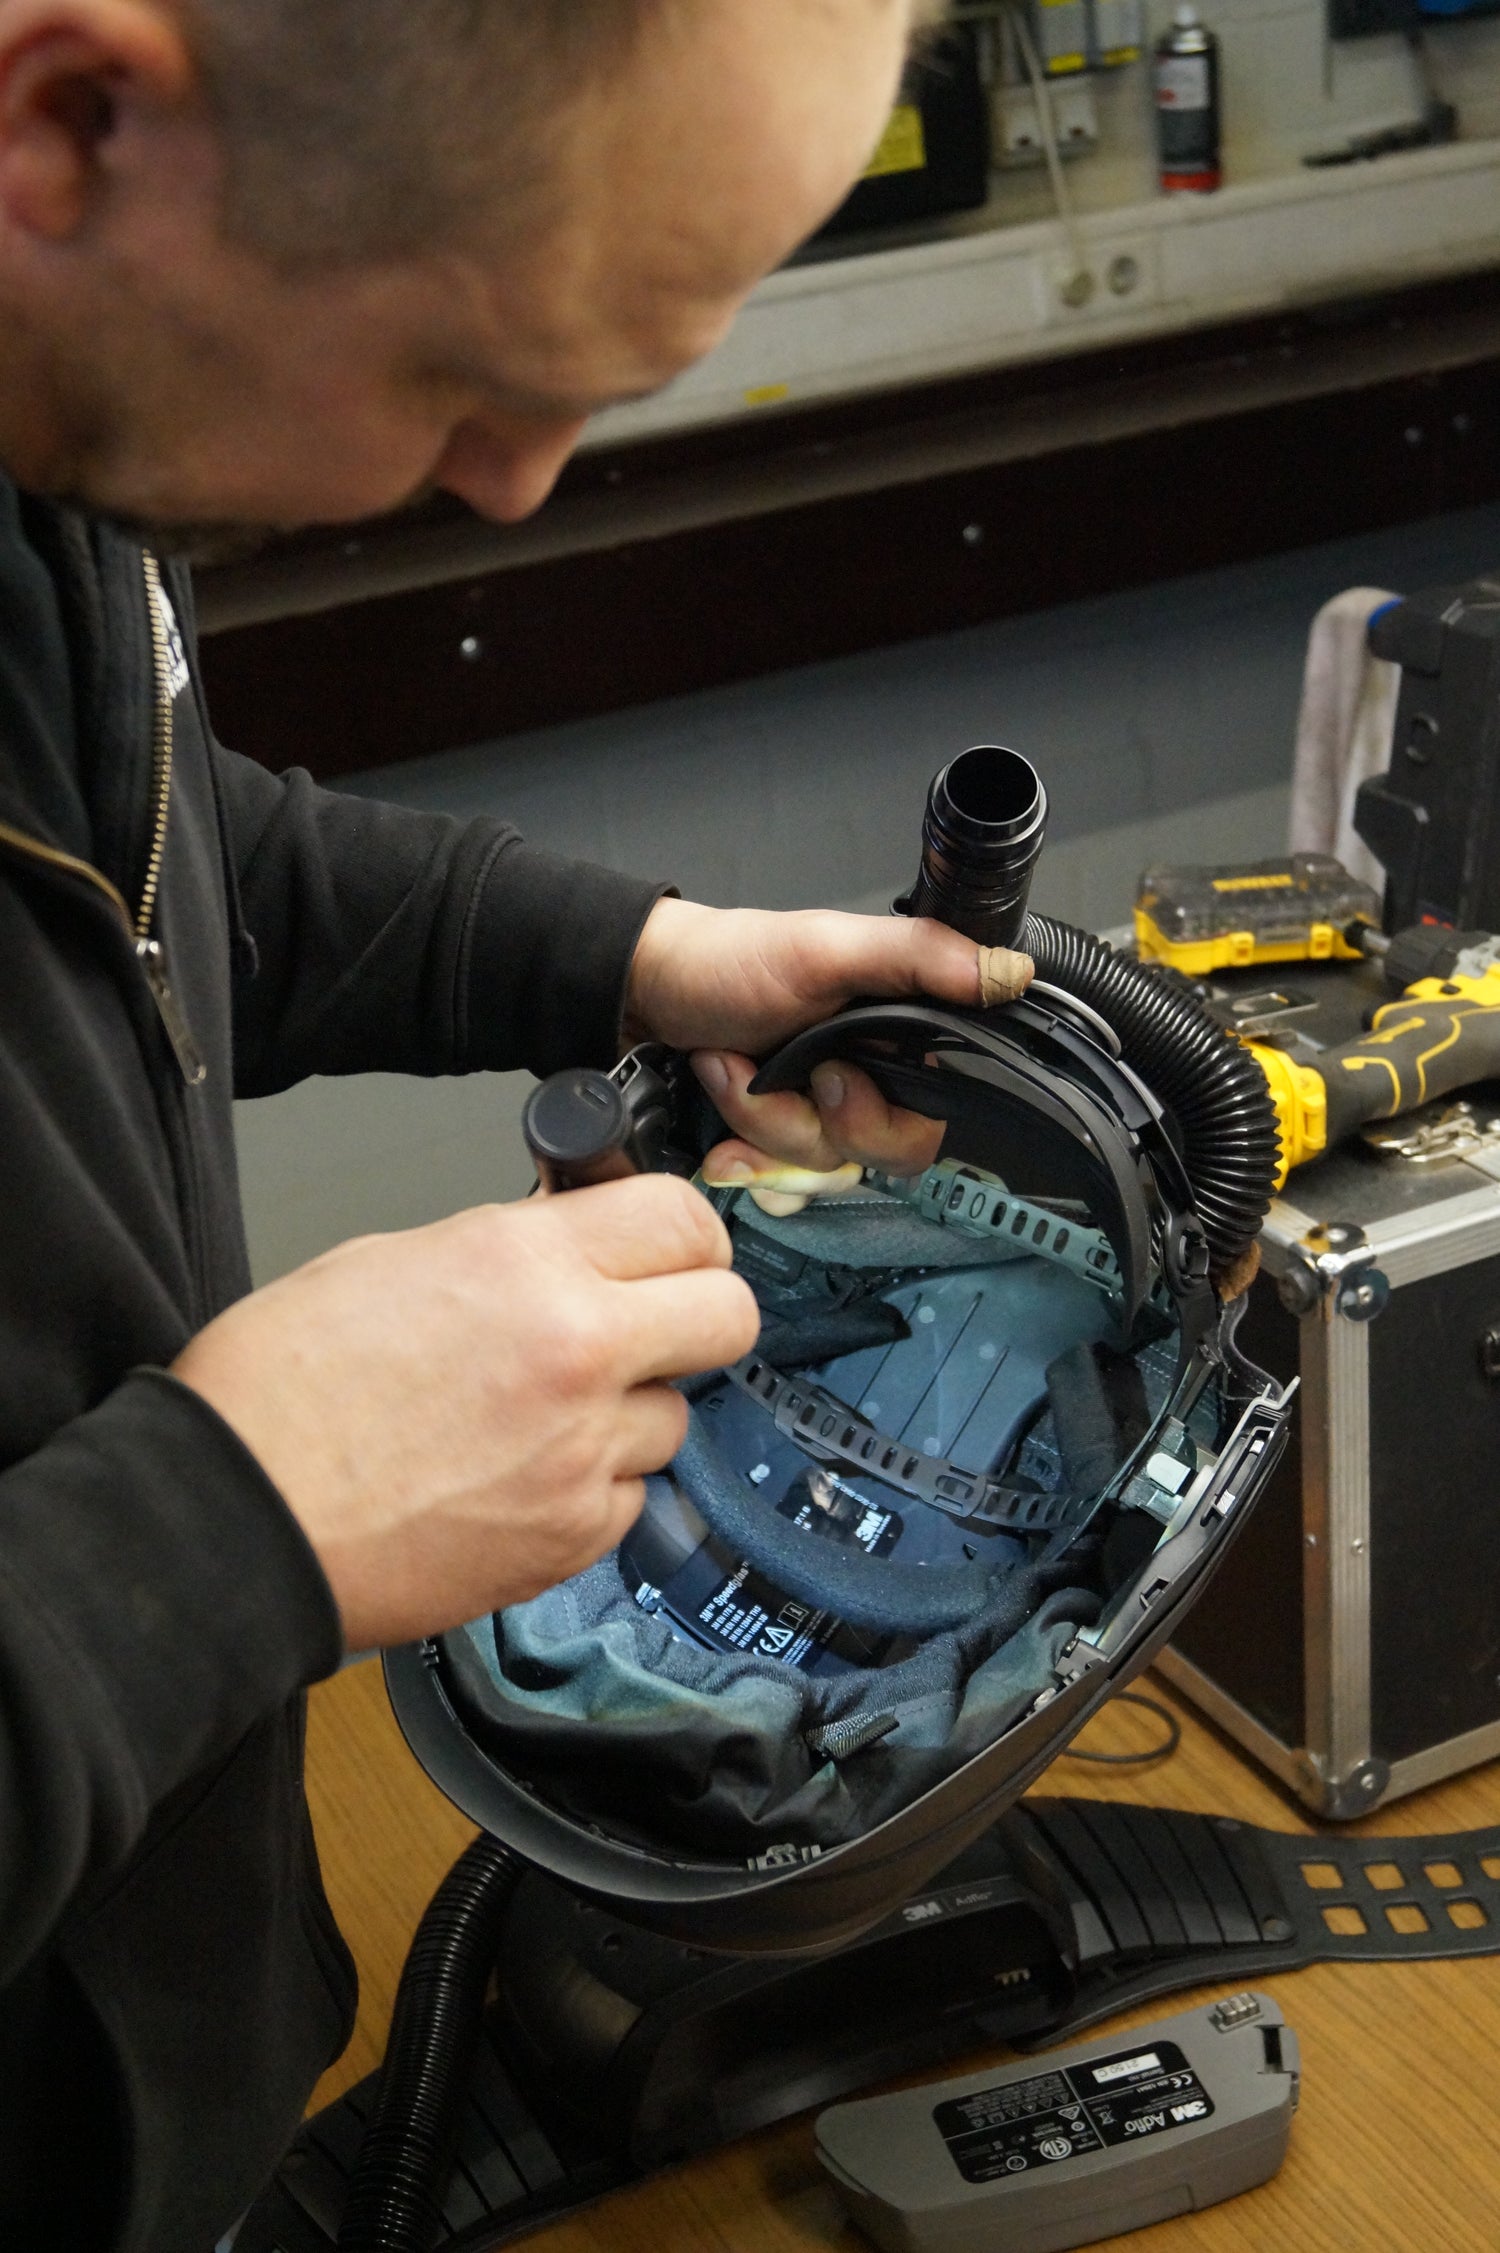 Techniker der Kaack GmbH führt präzise Wartungs- und Reparaturarbeiten an Schweißhelmen mit Frischlufteinheit durch, um optimale Sicherheit und Komfort für den Nutzer zu gewährleisten.